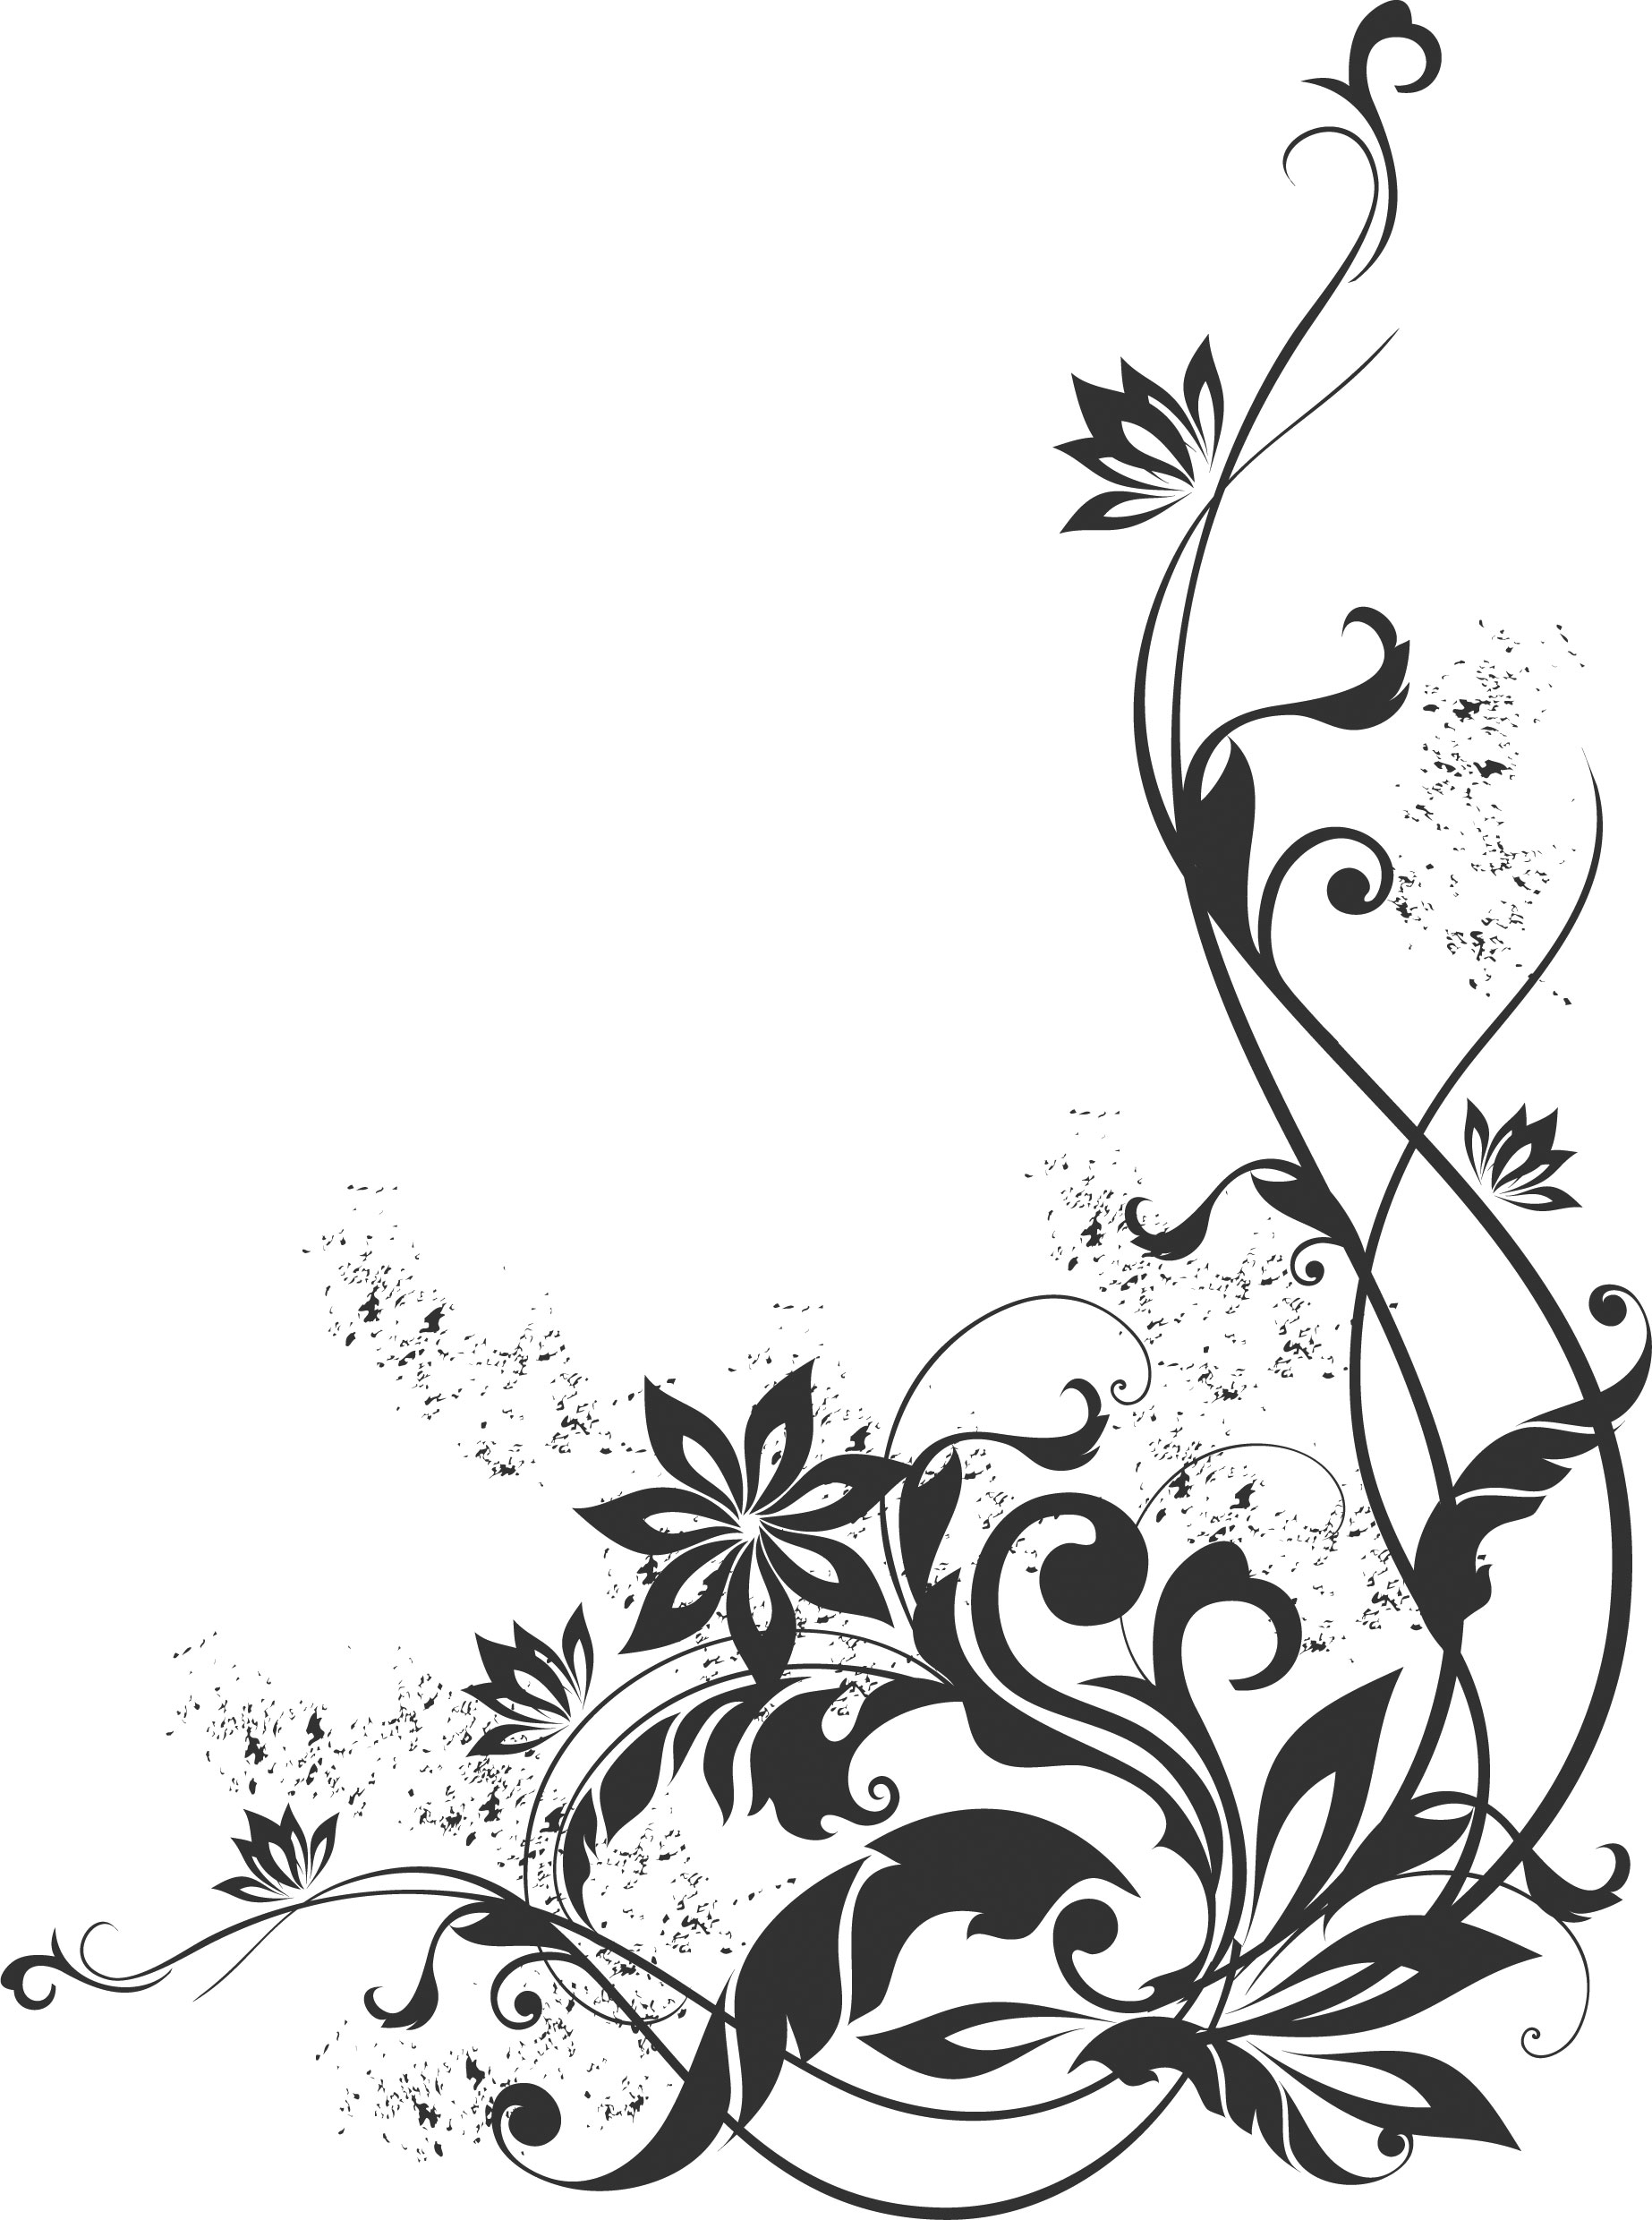 白黒 モノクロの花のイラスト フリー素材 ライン線 コーナー用no 874 白黒 蔓葉 コーナー